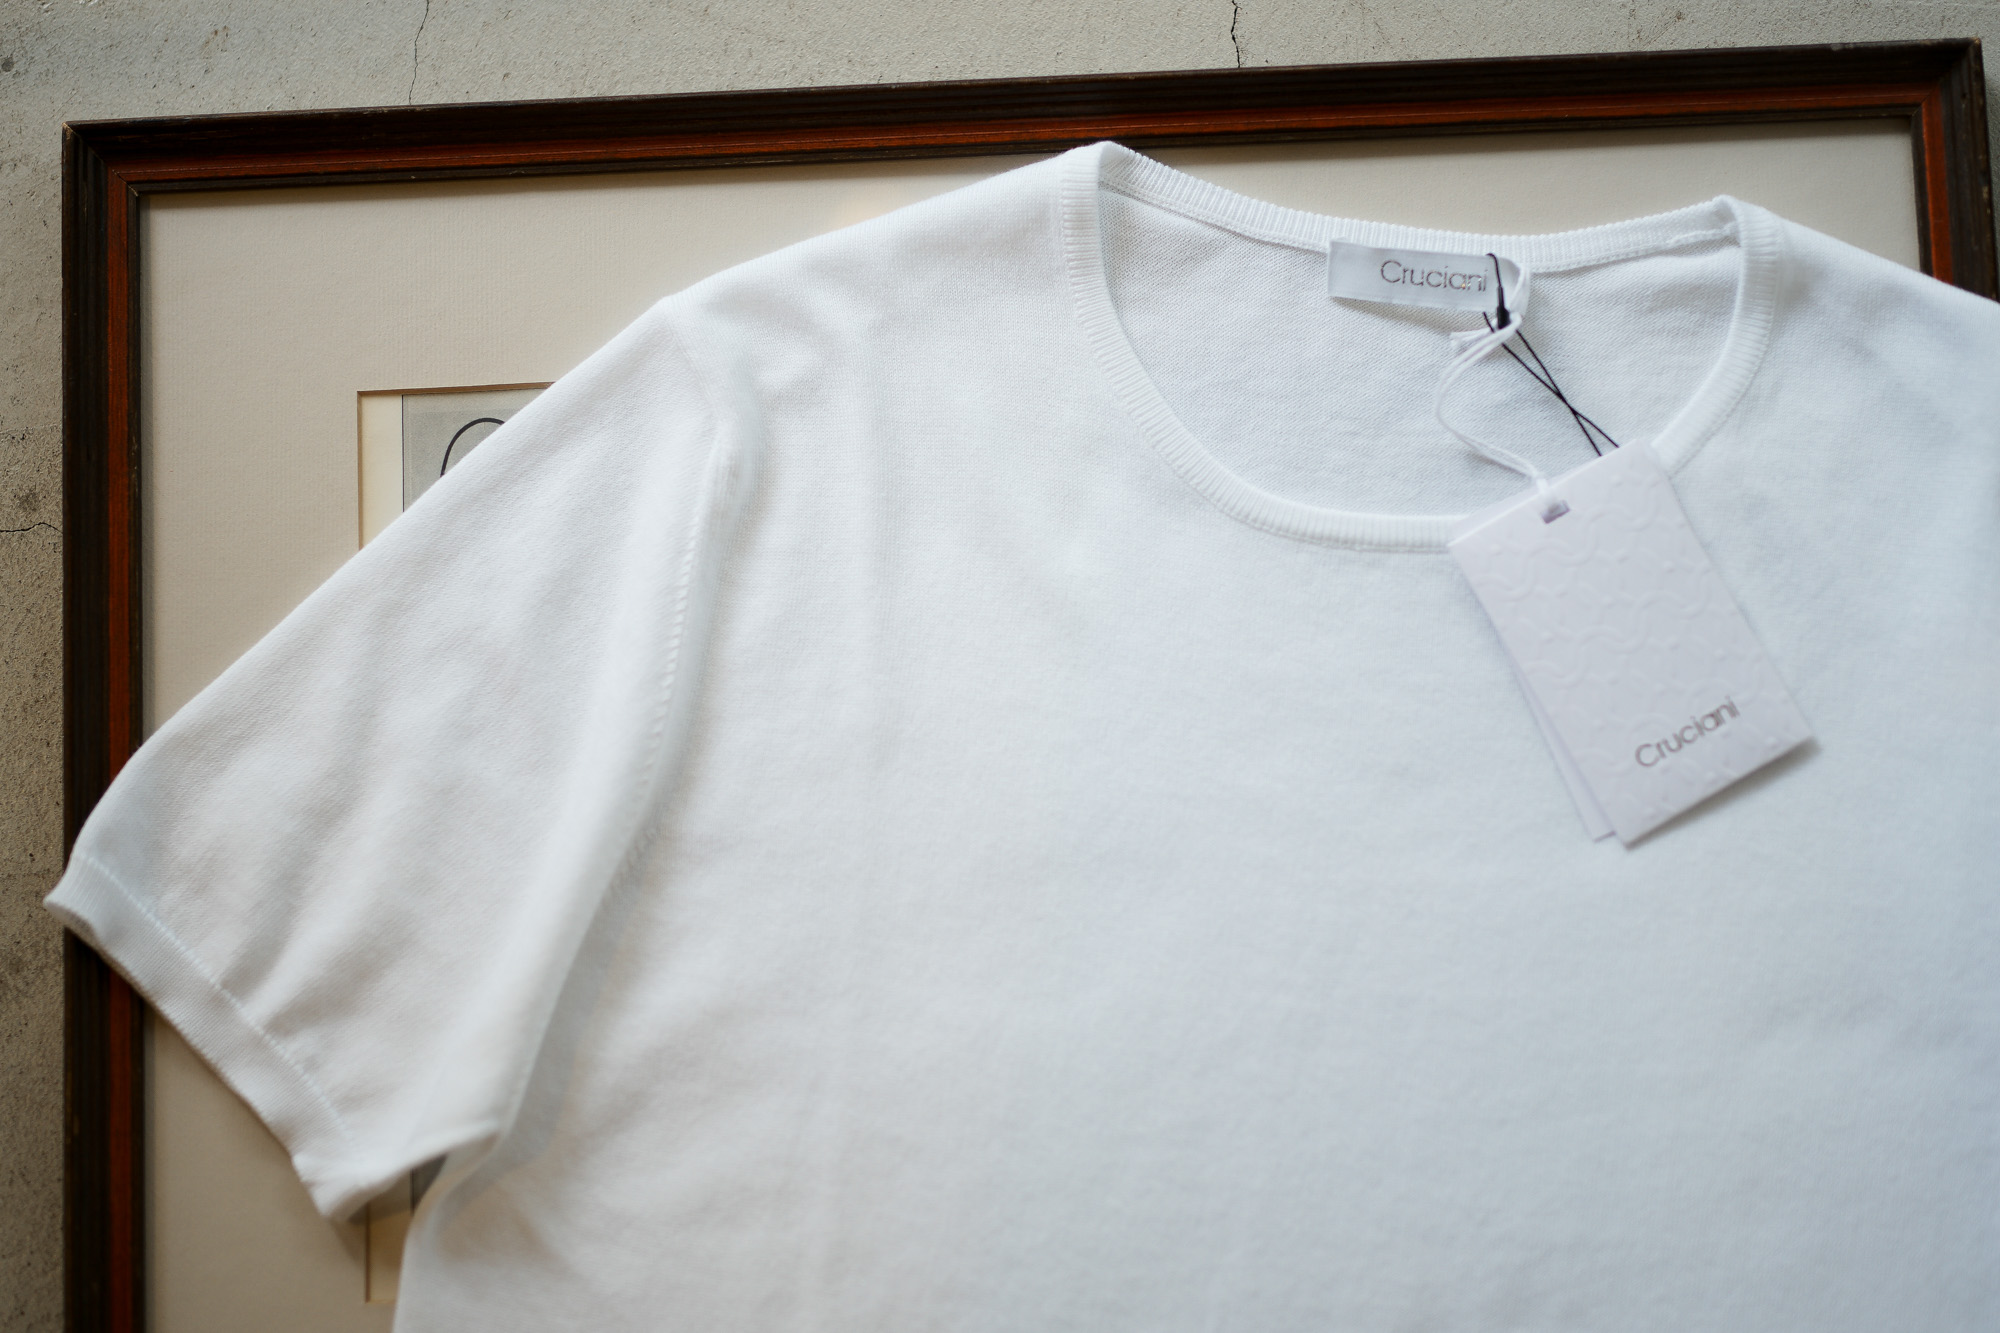 Cruciani (クルチアーニ) Knit T-shirt (ニット Tシャツ) 27ゲージ 